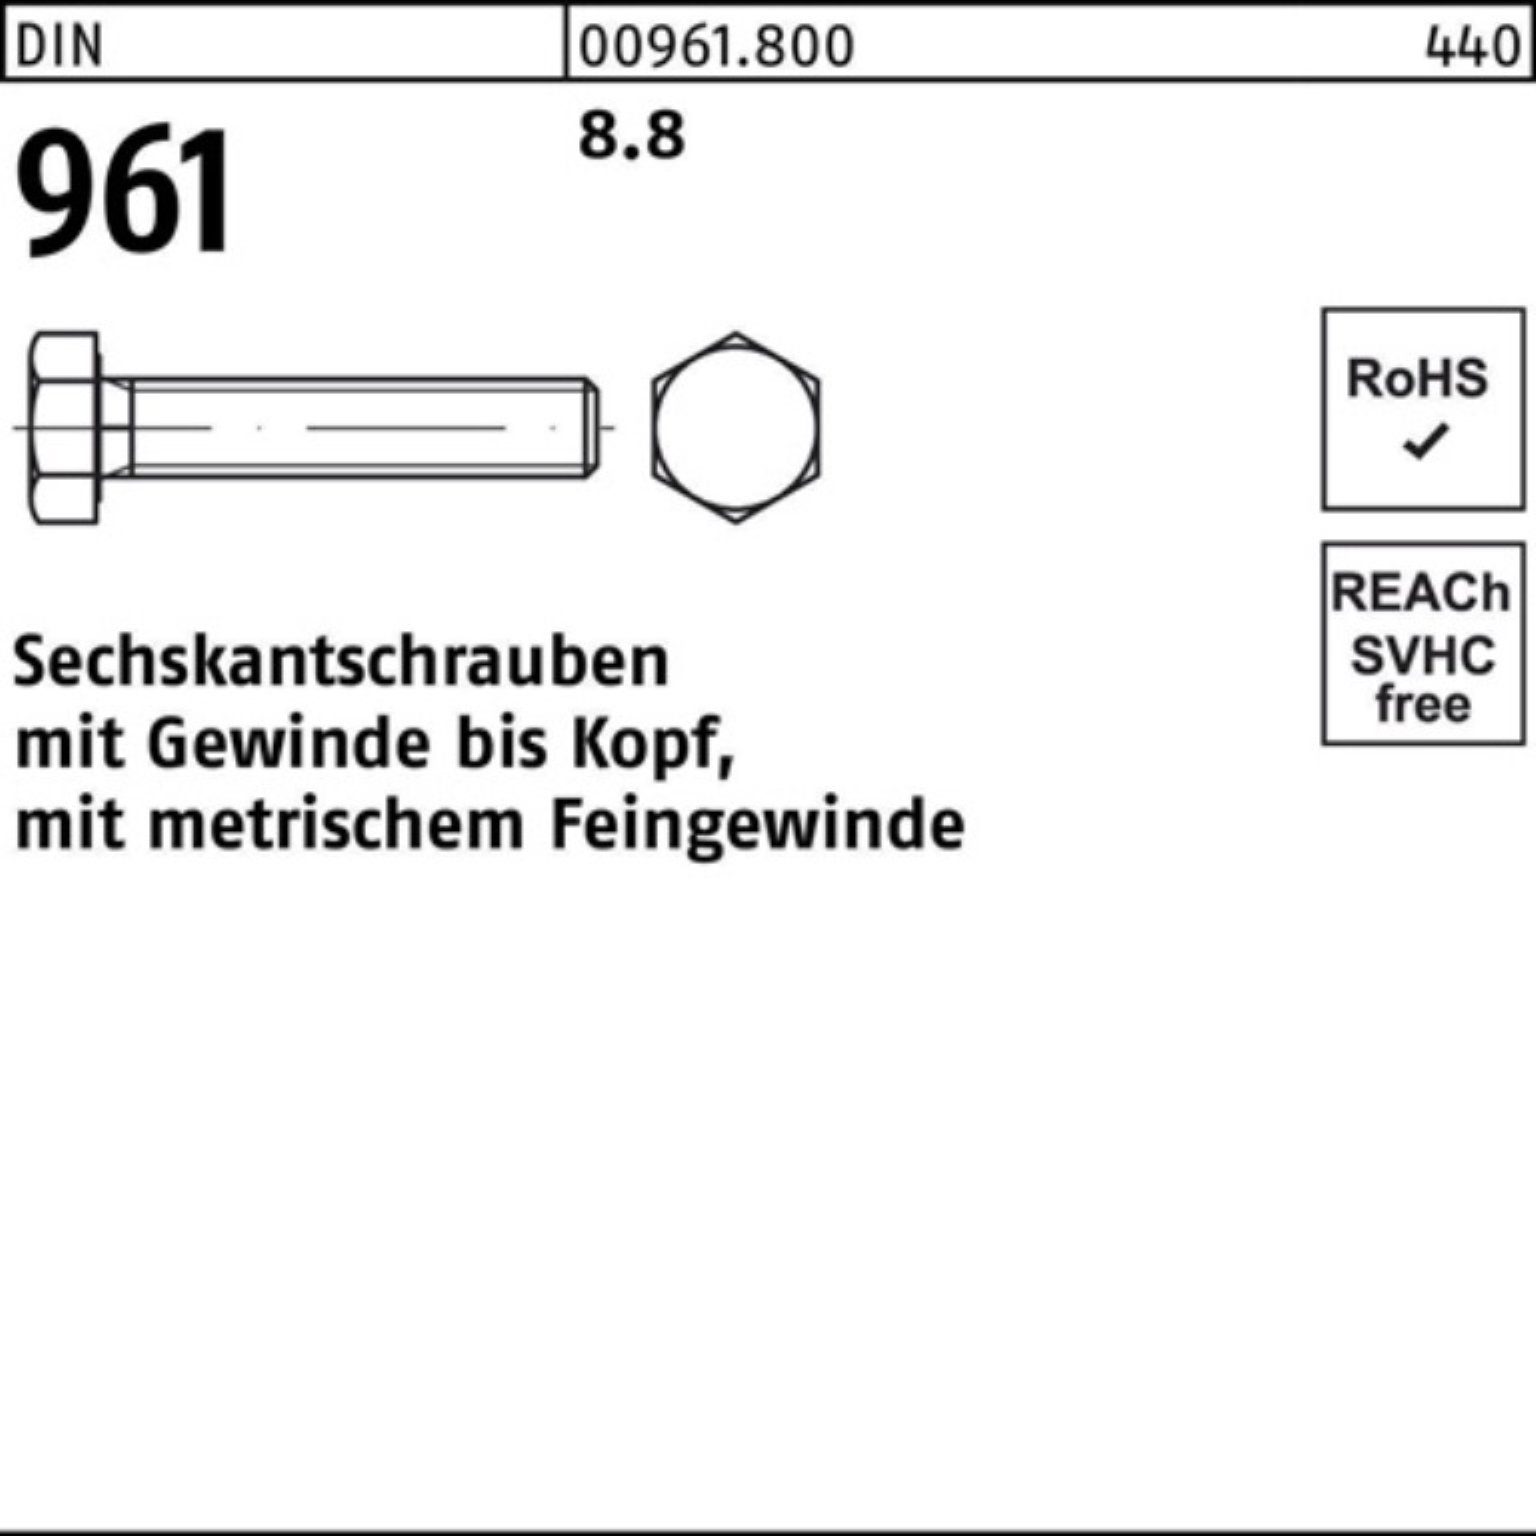 Reyher Stück 50 40 8.8 VG DIN Sechskantschraube Pack Sechskantschraube M16x1,5x 100er 961 DIN